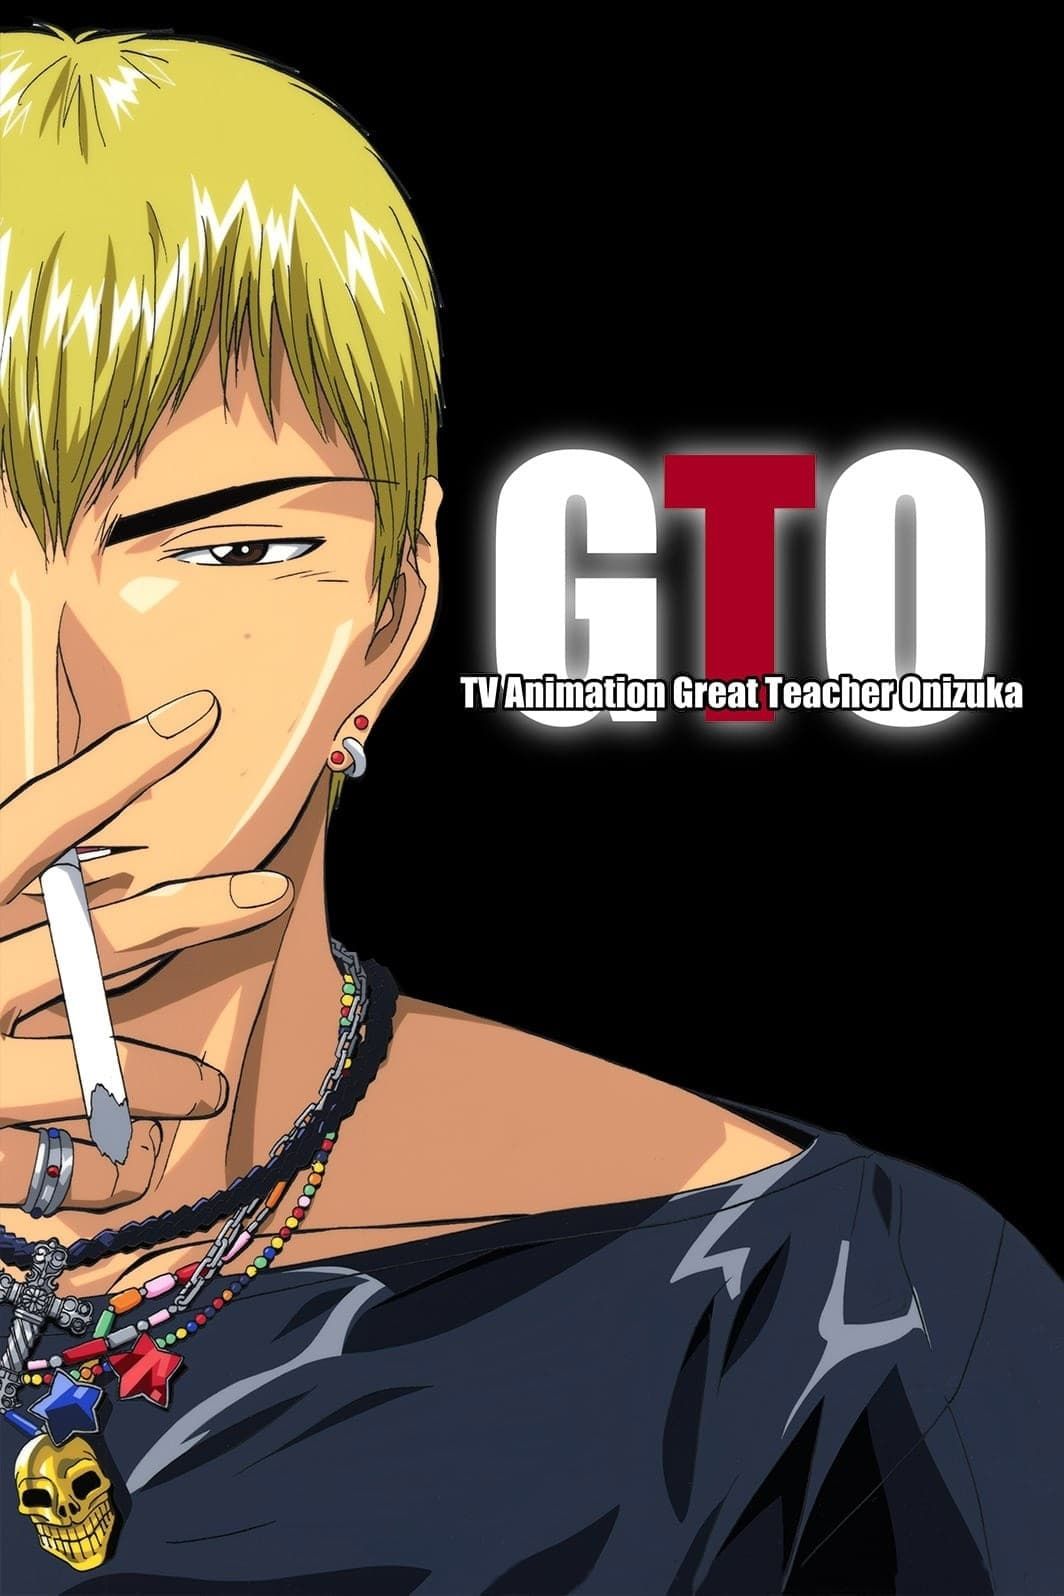 Onizuka fumando um cigarro no pôster de Grande Professor Onizuka